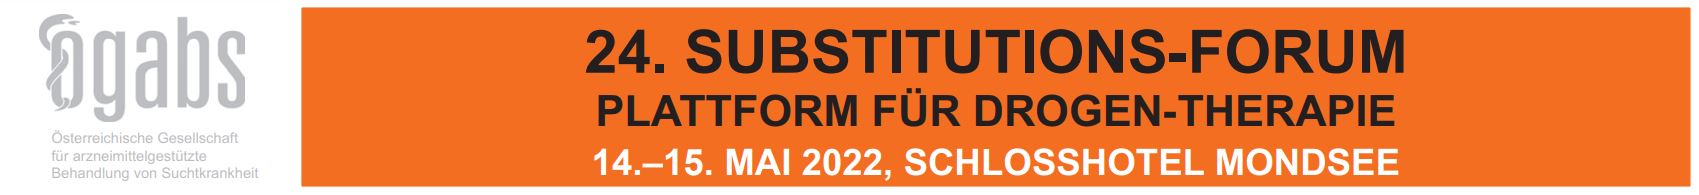 24. Substitutions-Forum 2022